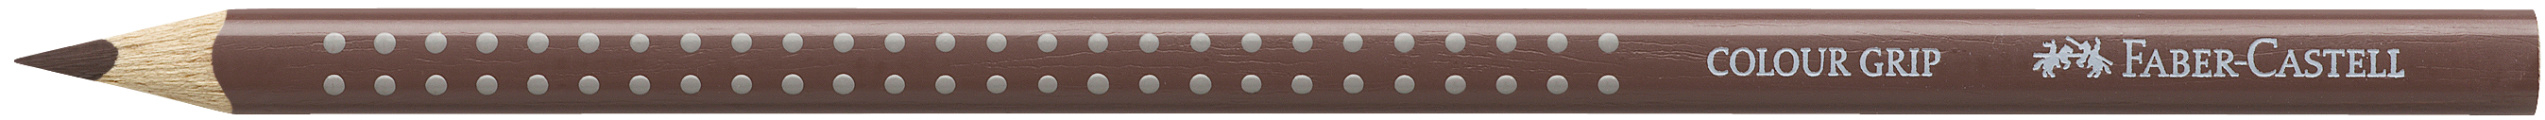 FABER-CASTELL Crayon de couleur Colour Grip 112476 van dyck brun